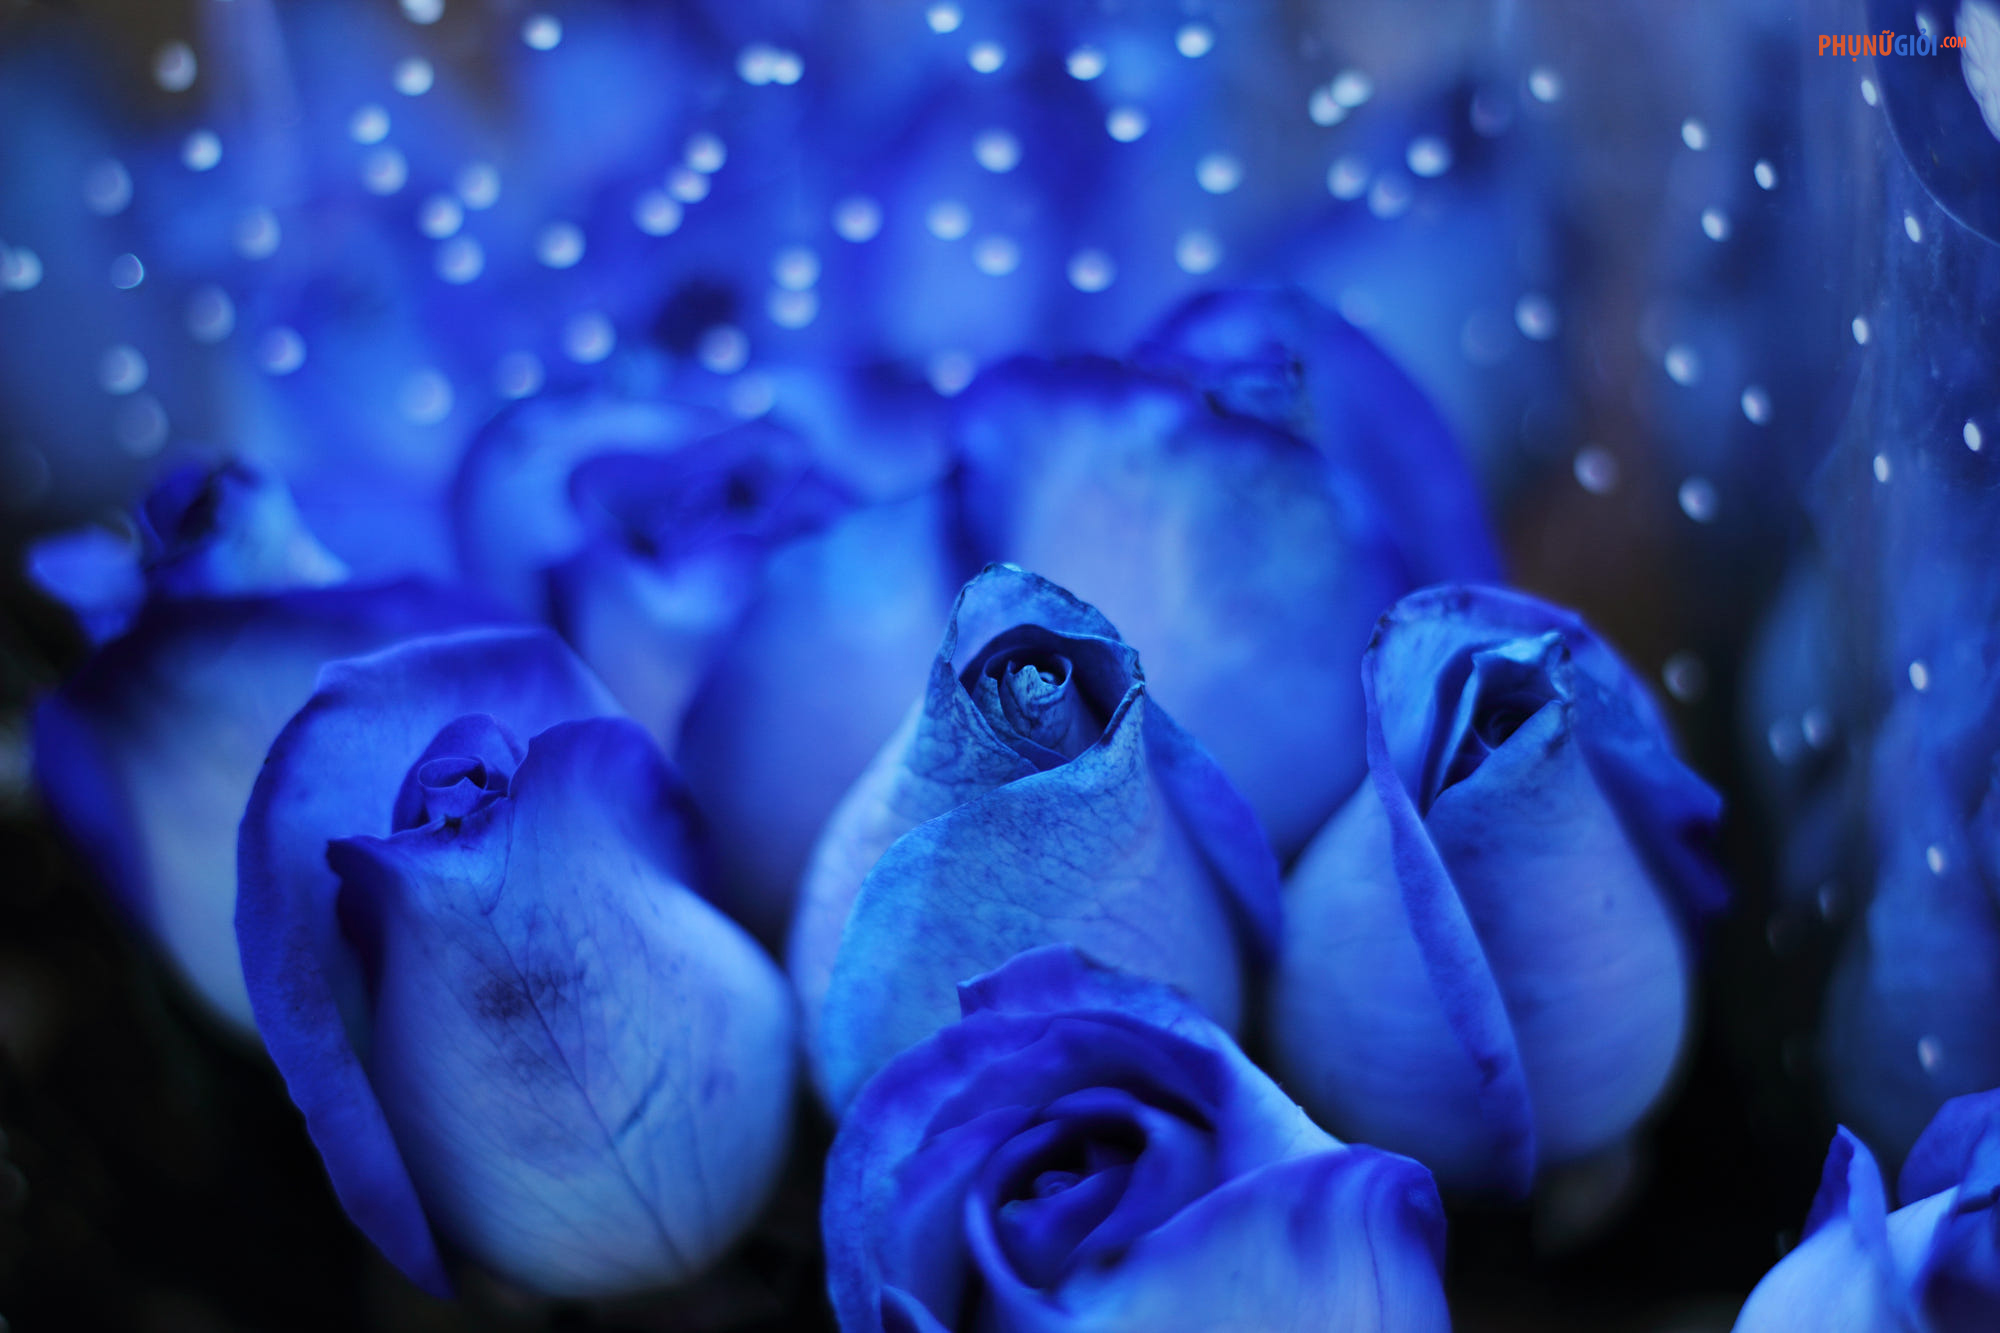 Hoa Hồng Xanh: Hoa hồng xanh là biểu tượng cho sự trẻ trung và tươi mới. Những cánh hoa xanh đậm sẽ khiến bạn cảm thấy thật khác biệt và đặc biệt hơn.